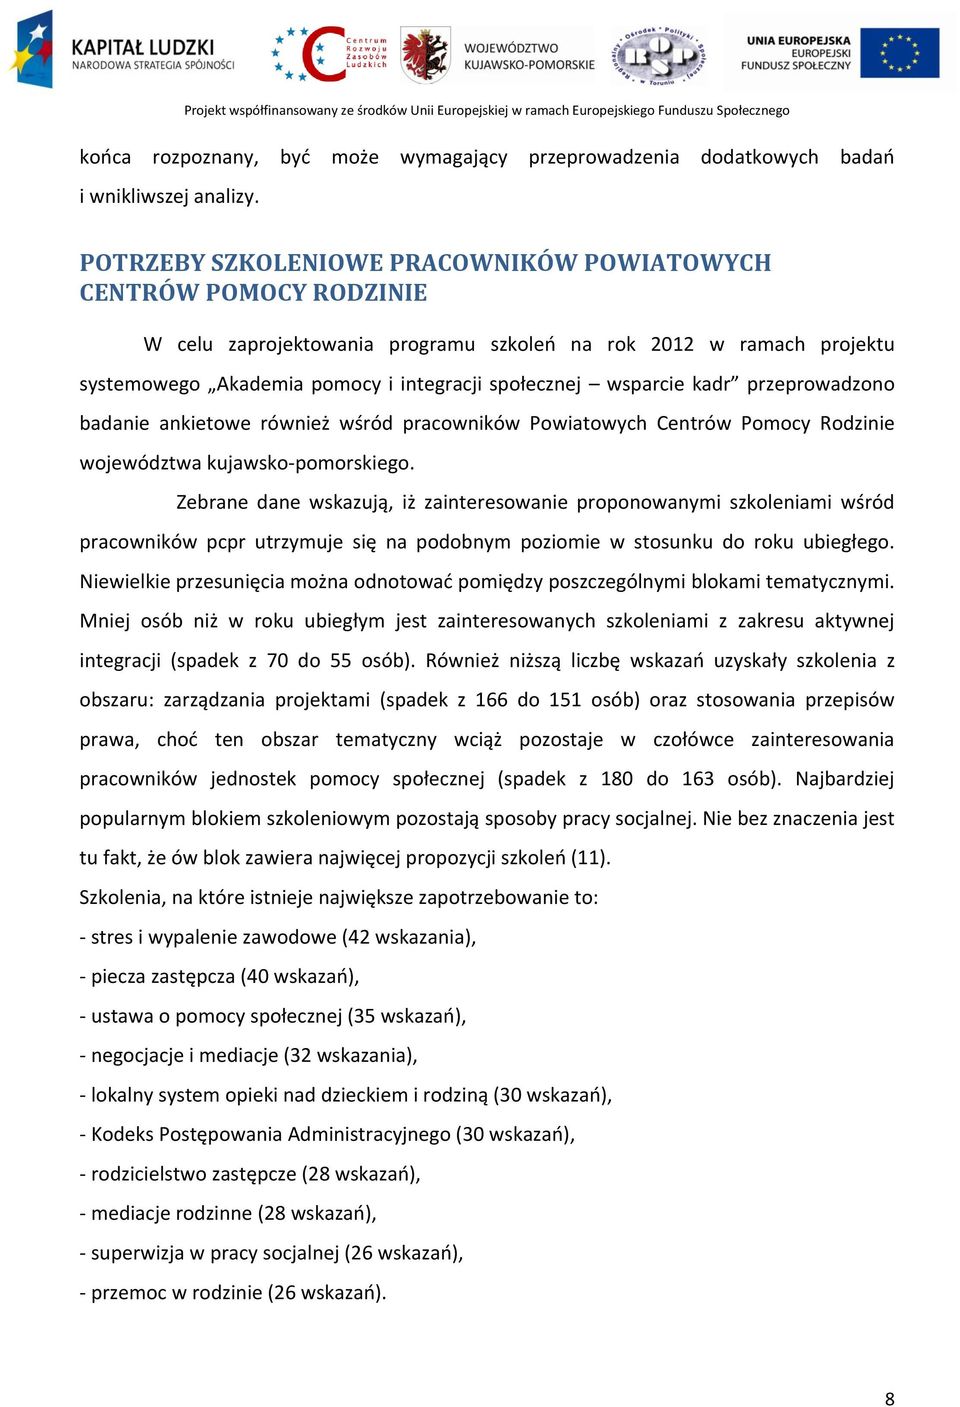 kadr przeprowadzono badanie ankietowe również wśród pracowników Powiatowych Centrów Pomocy Rodzinie województwa kujawsko-pomorskiego.